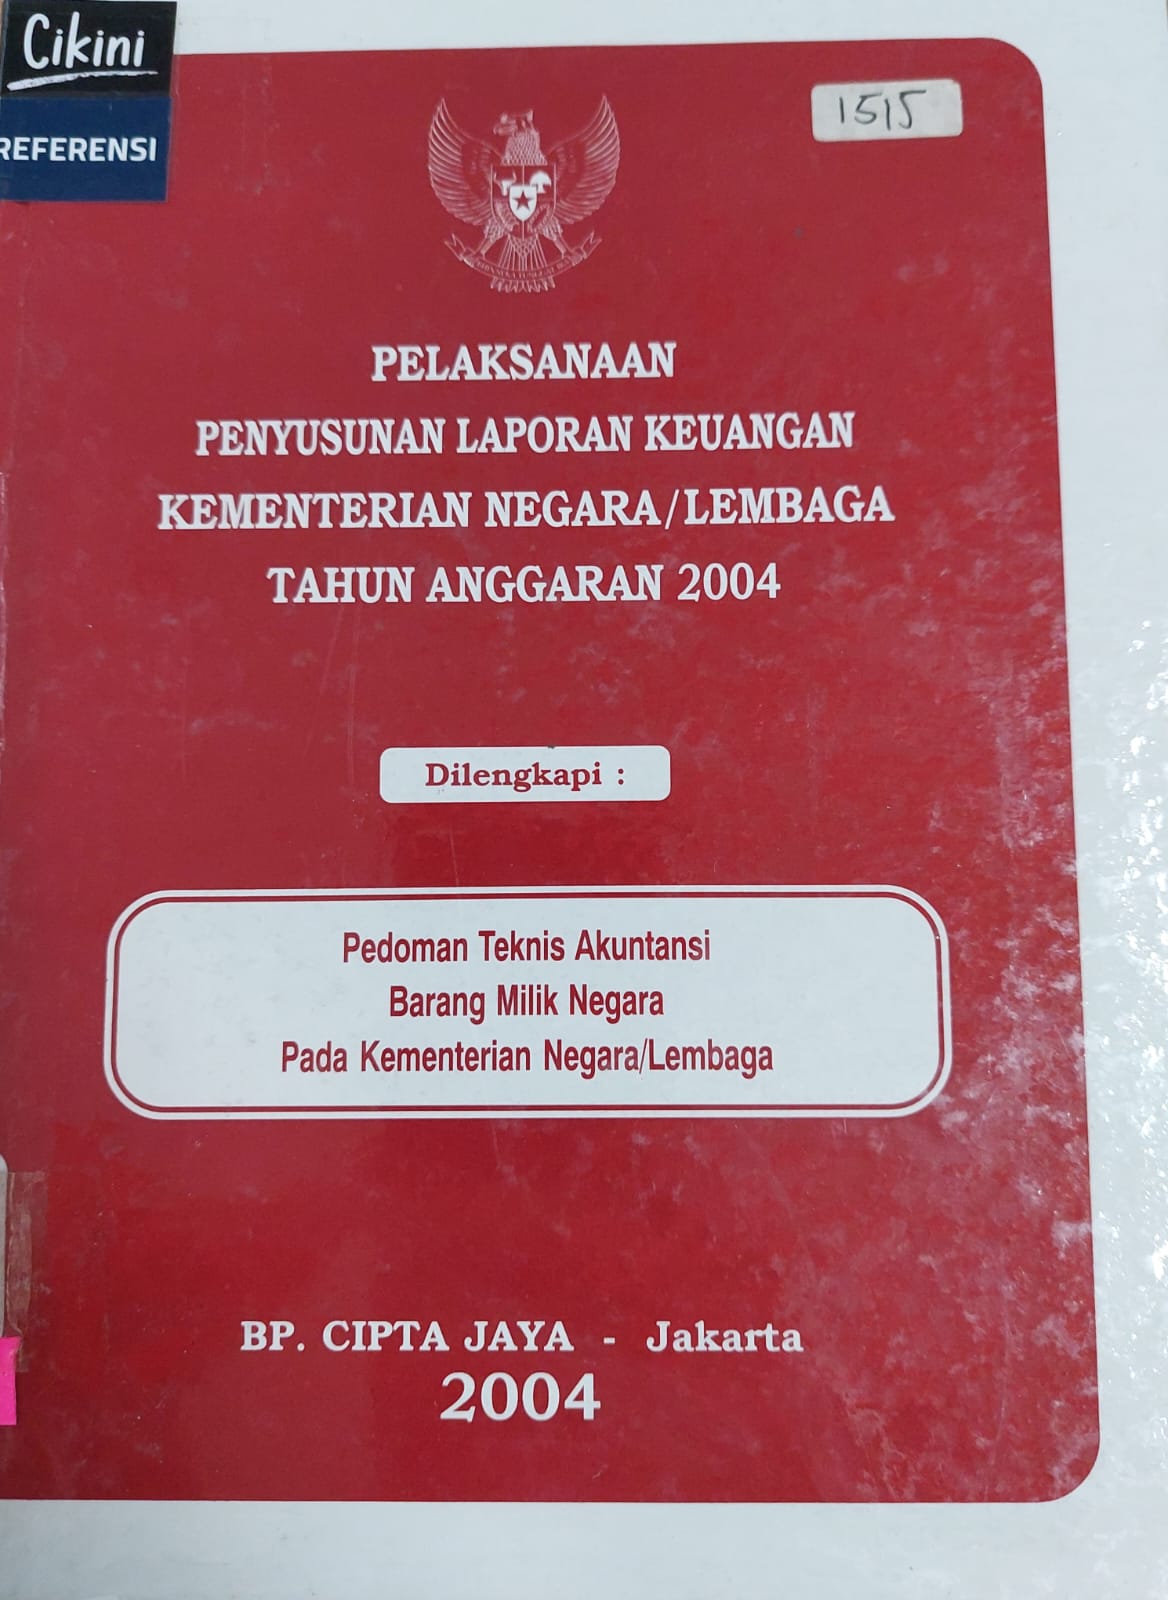 Pelaksanaan penyusunan laporan keuangan kementerian negara/lembaga tahun anggaran 2004